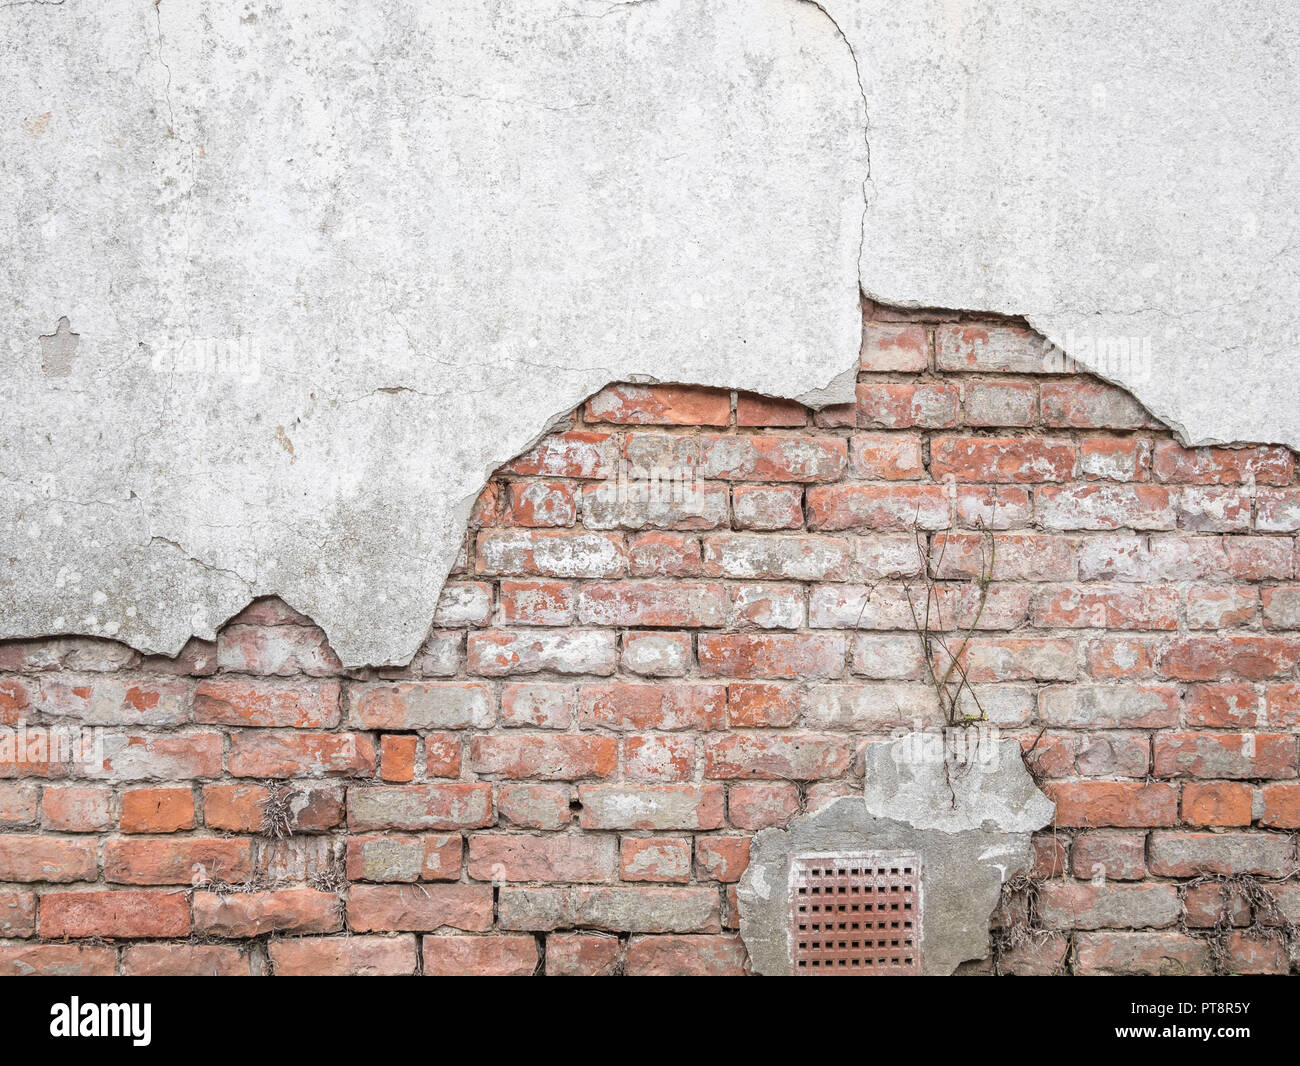 Il vecchio muro di mattoni è stato alterato e ha bisogno di essere riparato mentre il cemento cade via. Muratura in mattoni a vista, metafora a vista, colpire un muro di mattoni, settore delle costruzioni nel Regno Unito. Foto Stock